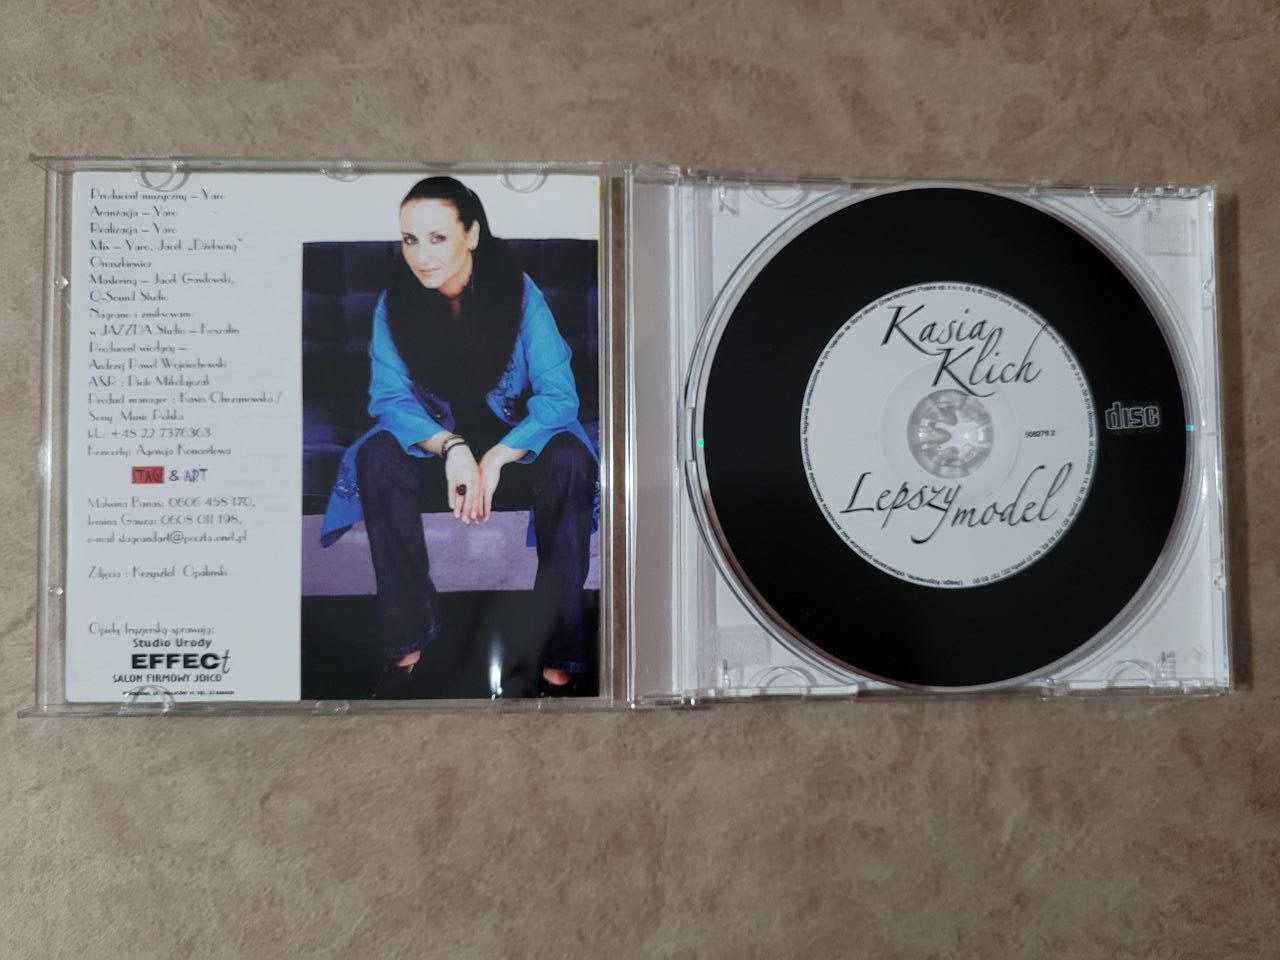 Kasia Klich "Lepszy model" CD